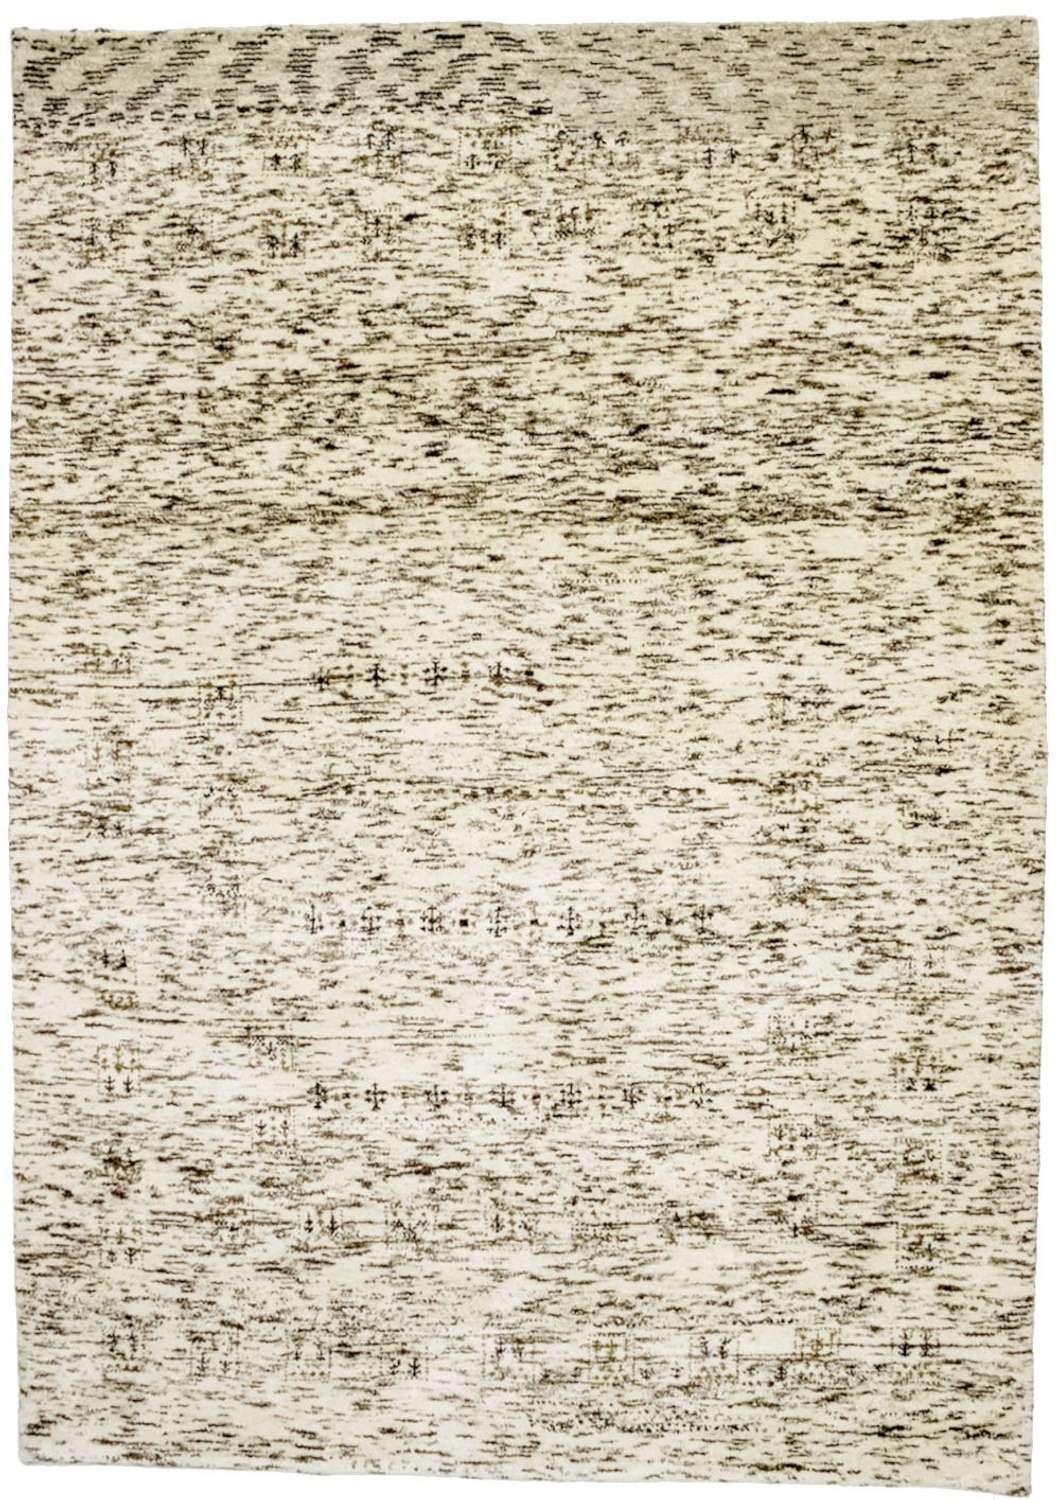 Wool Rug - 198 x 142 cm - beige